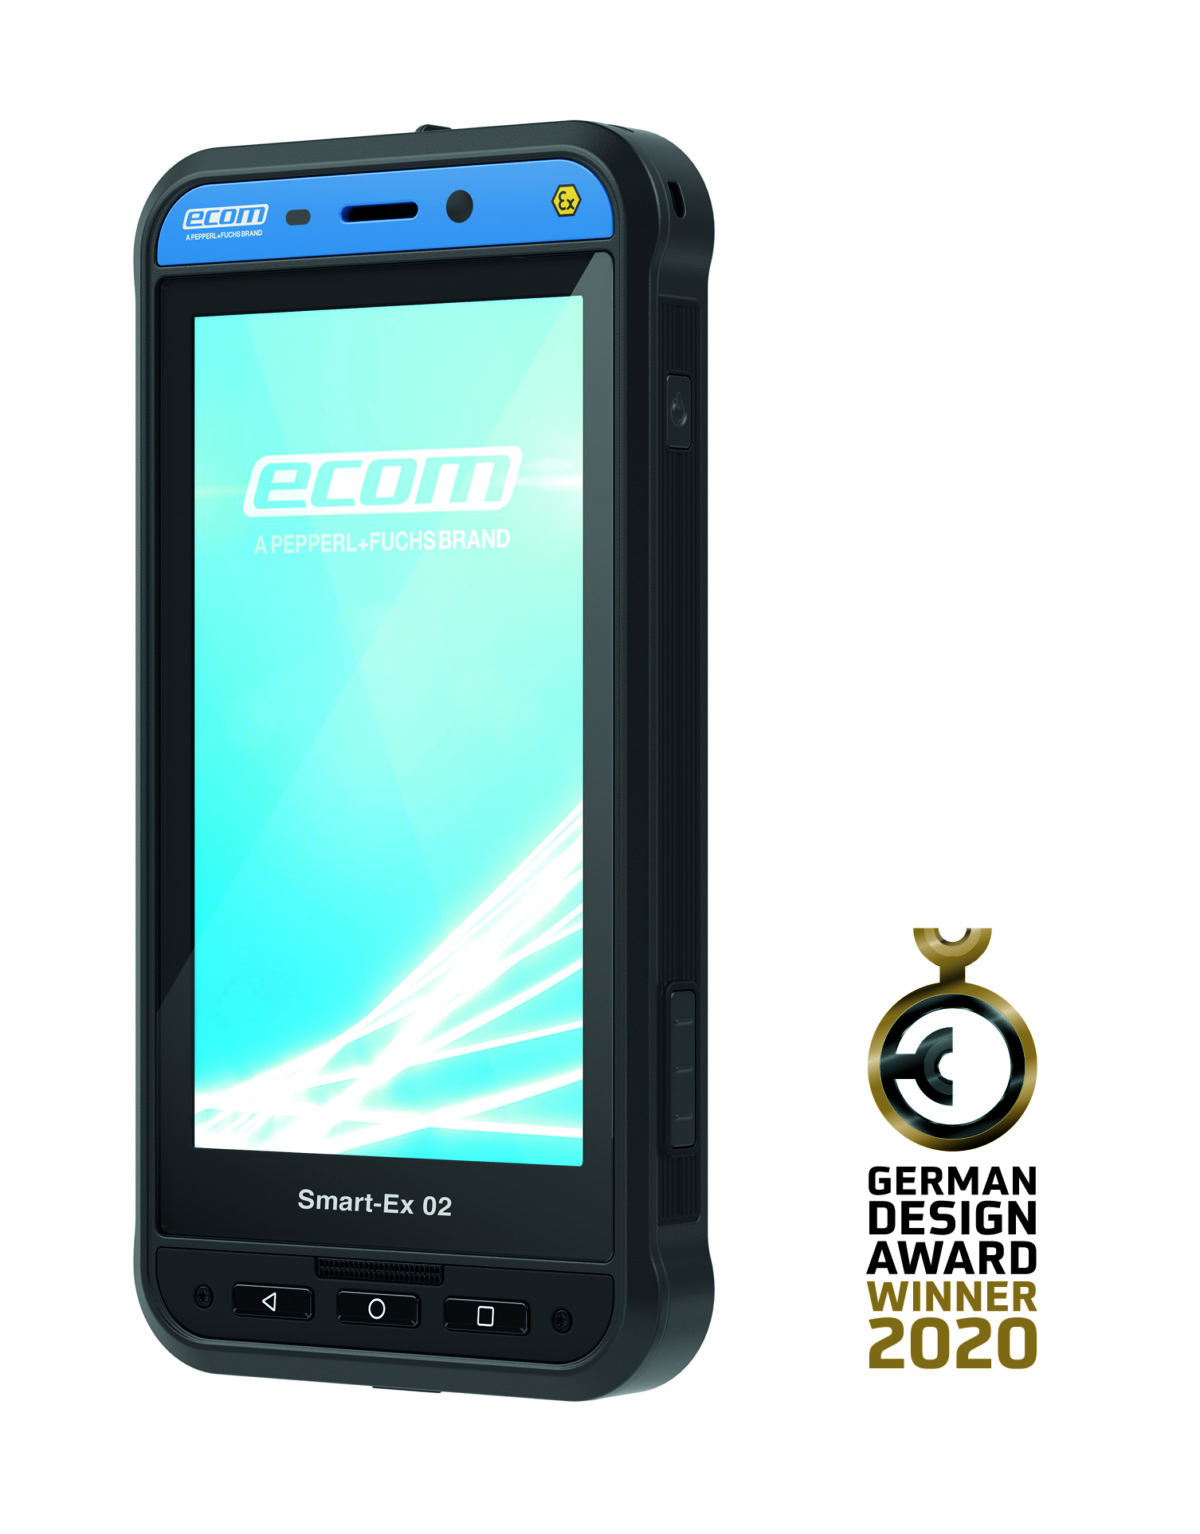 Ausgezeichnet mit dem German Design Award 2020: das neue explosionsgeschützte Smartphone Smart-Ex 02 von ecom.(CR: ecom)